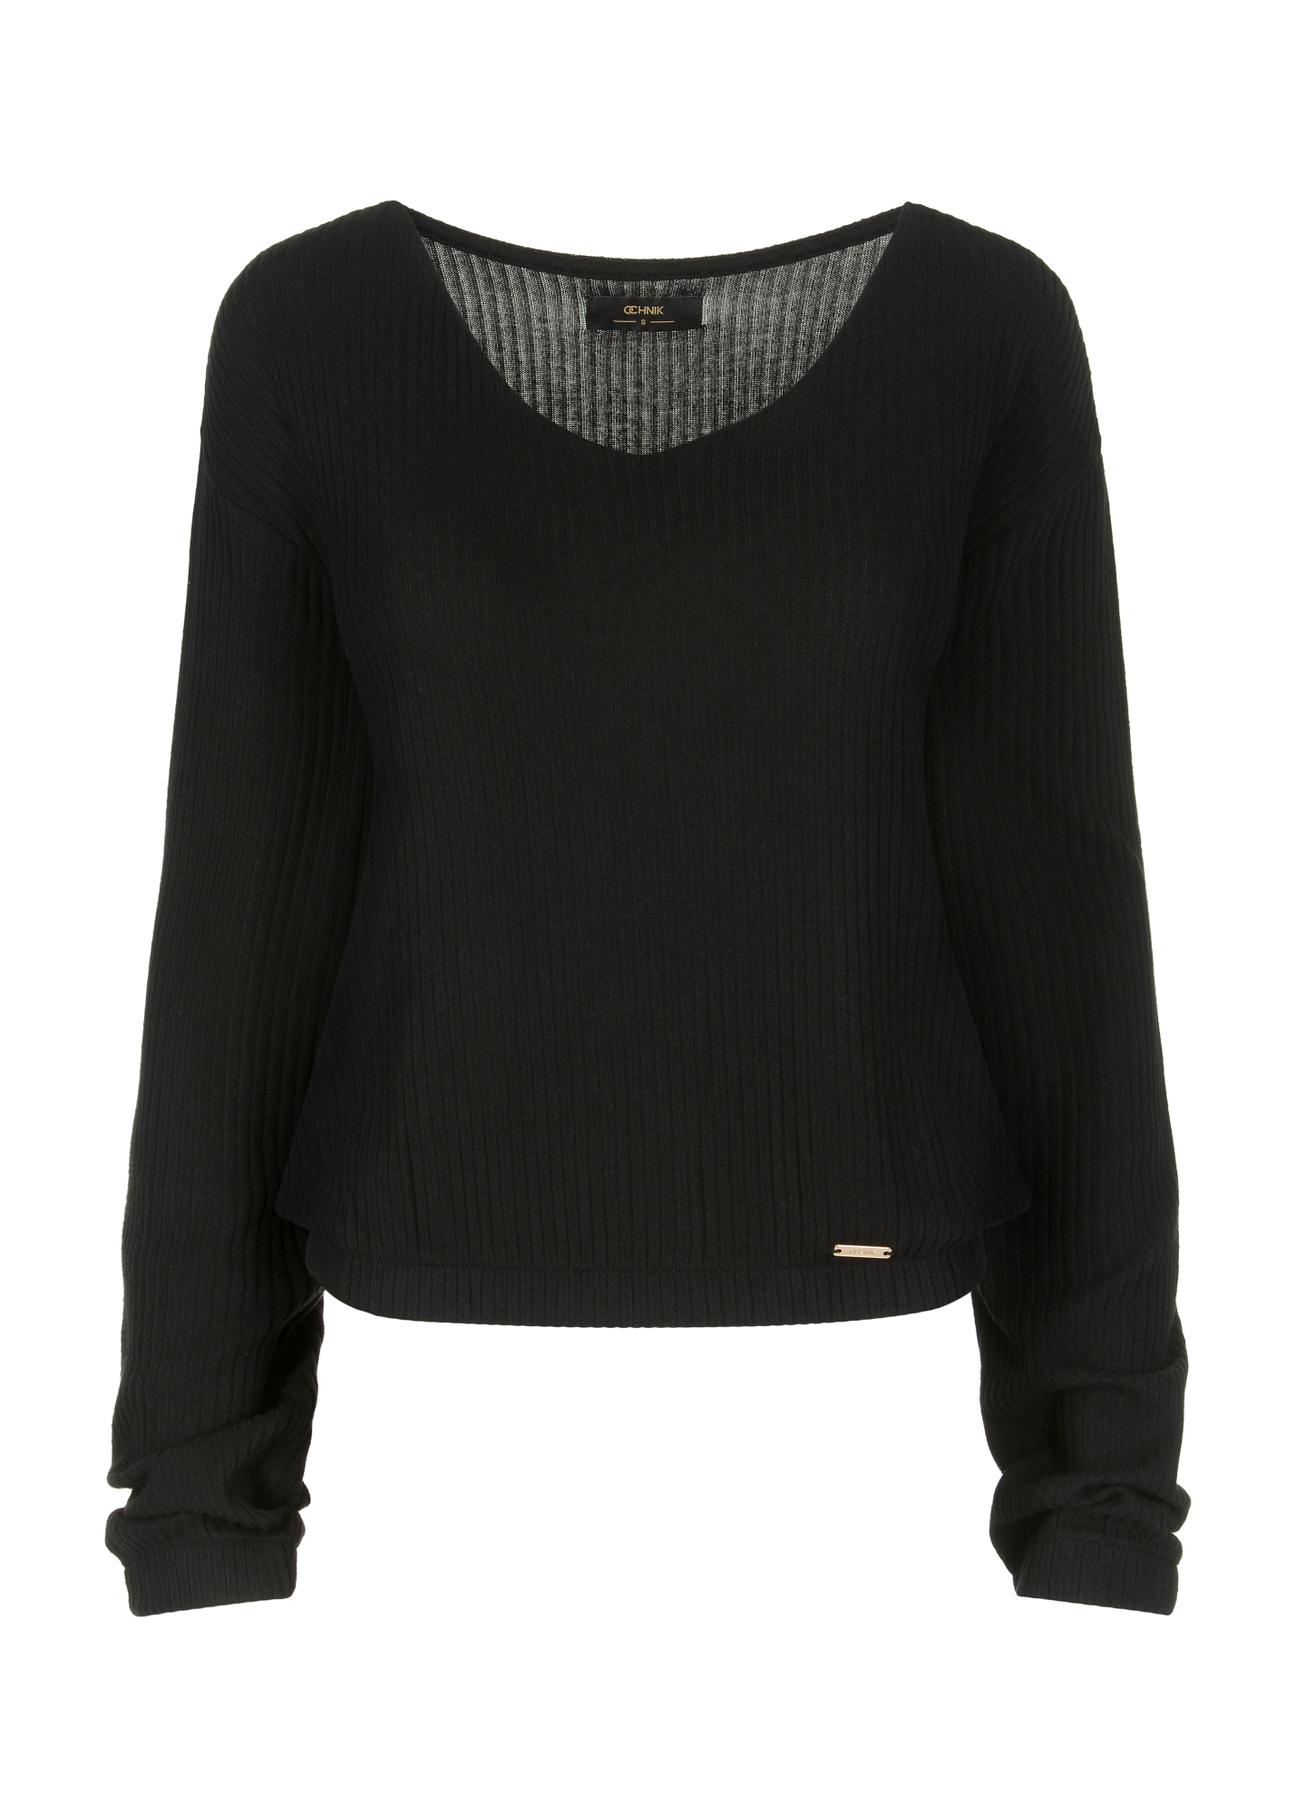 Czarny prążkowany sweter damski SWEDT-0178-99(W23)